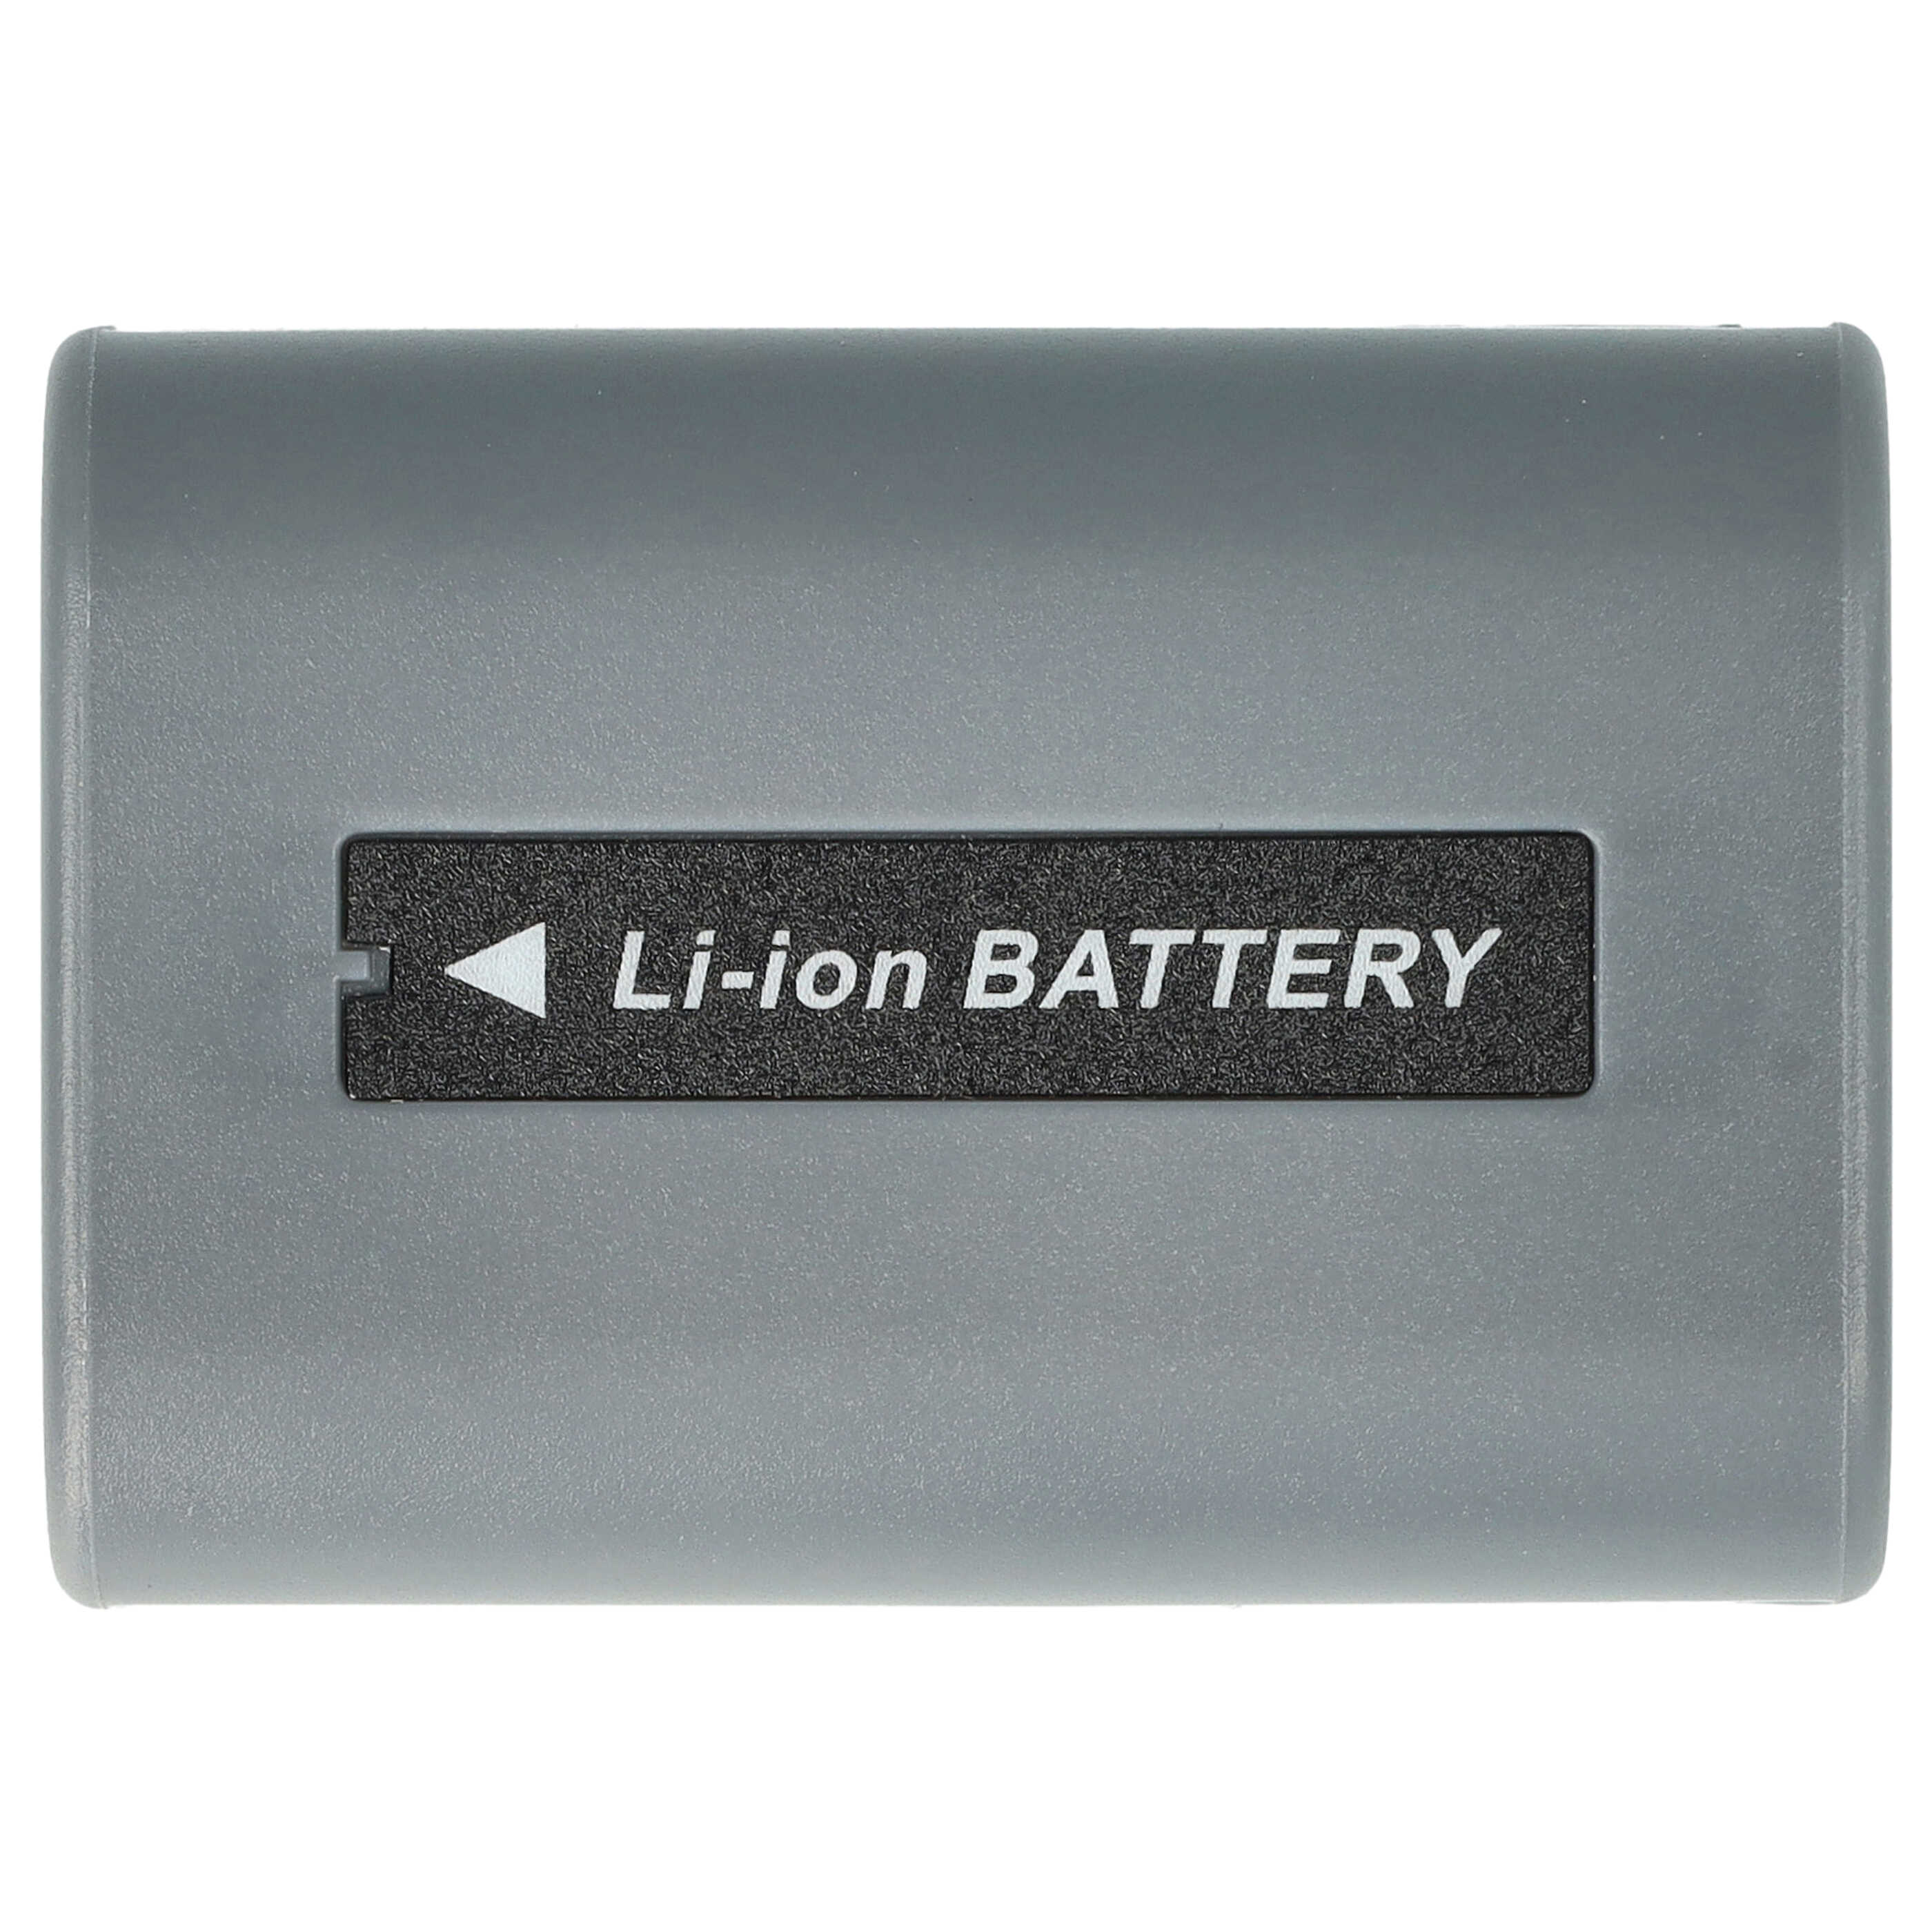 Batterie remplace Sony NP-FP50, NP-FP30, NP-FP60, NP-FP51, NP-FP70 pour caméscope - 600mAh 7,2V Li-ion